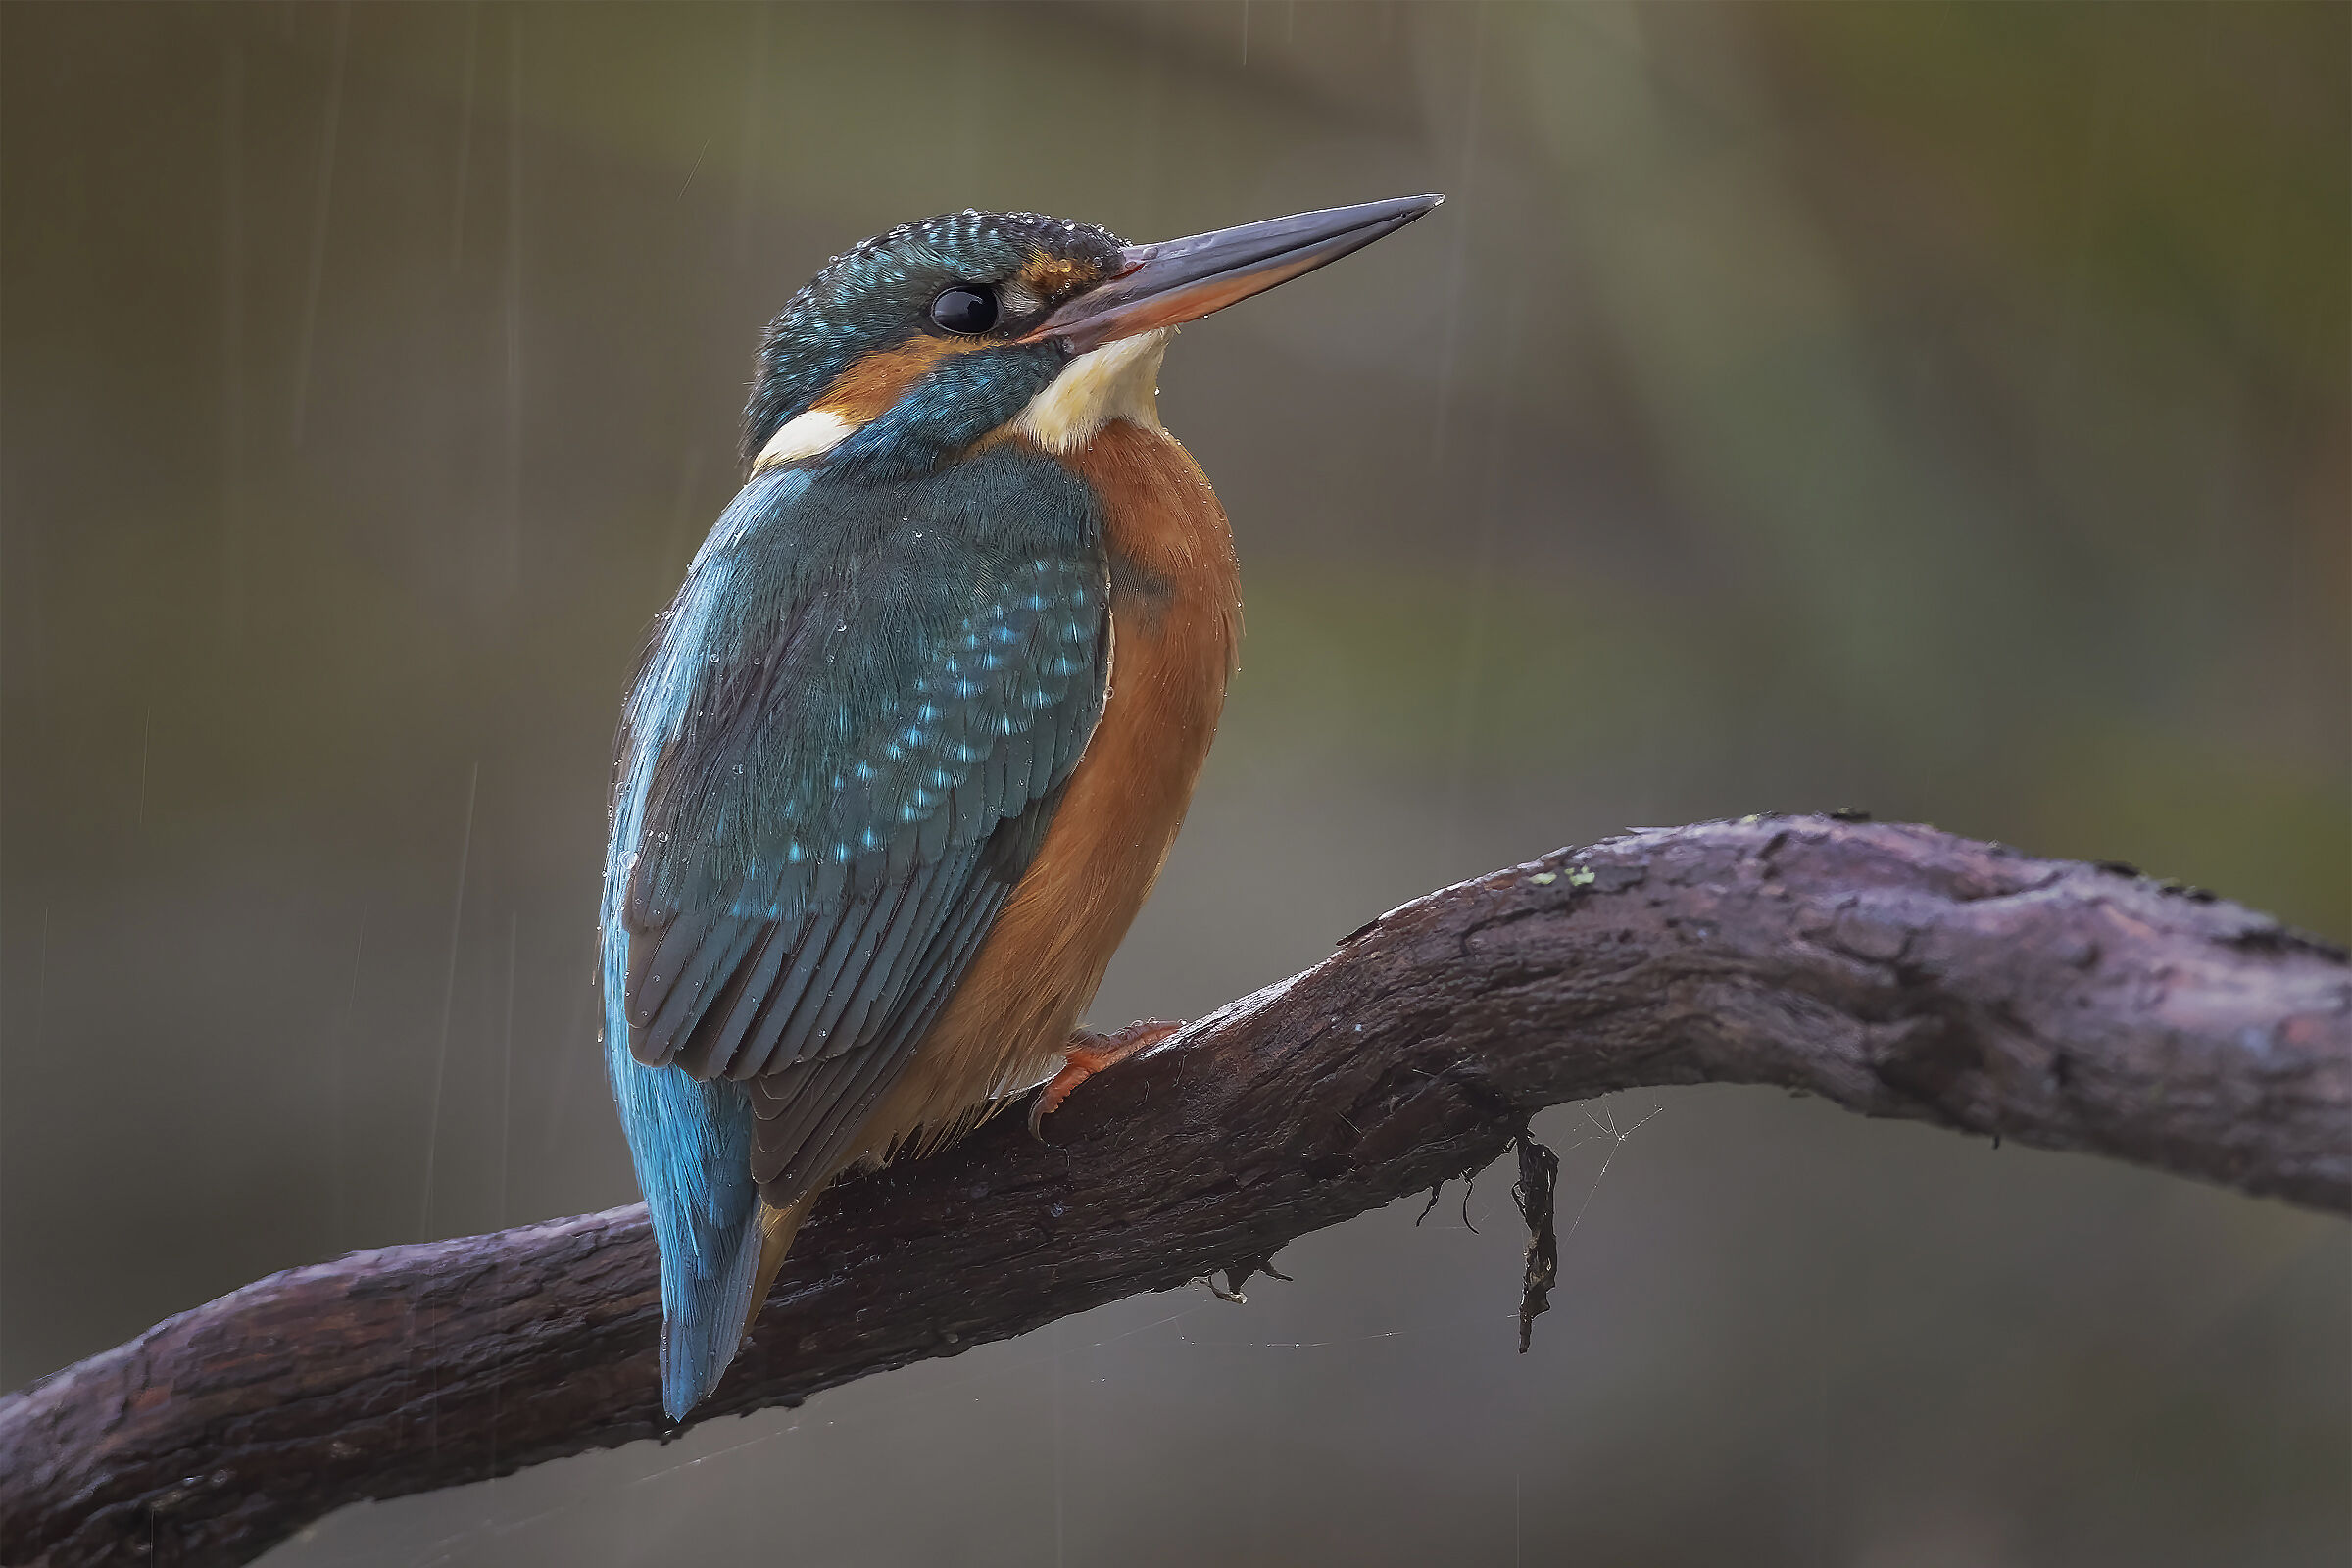 Kingfisher in the rain ......